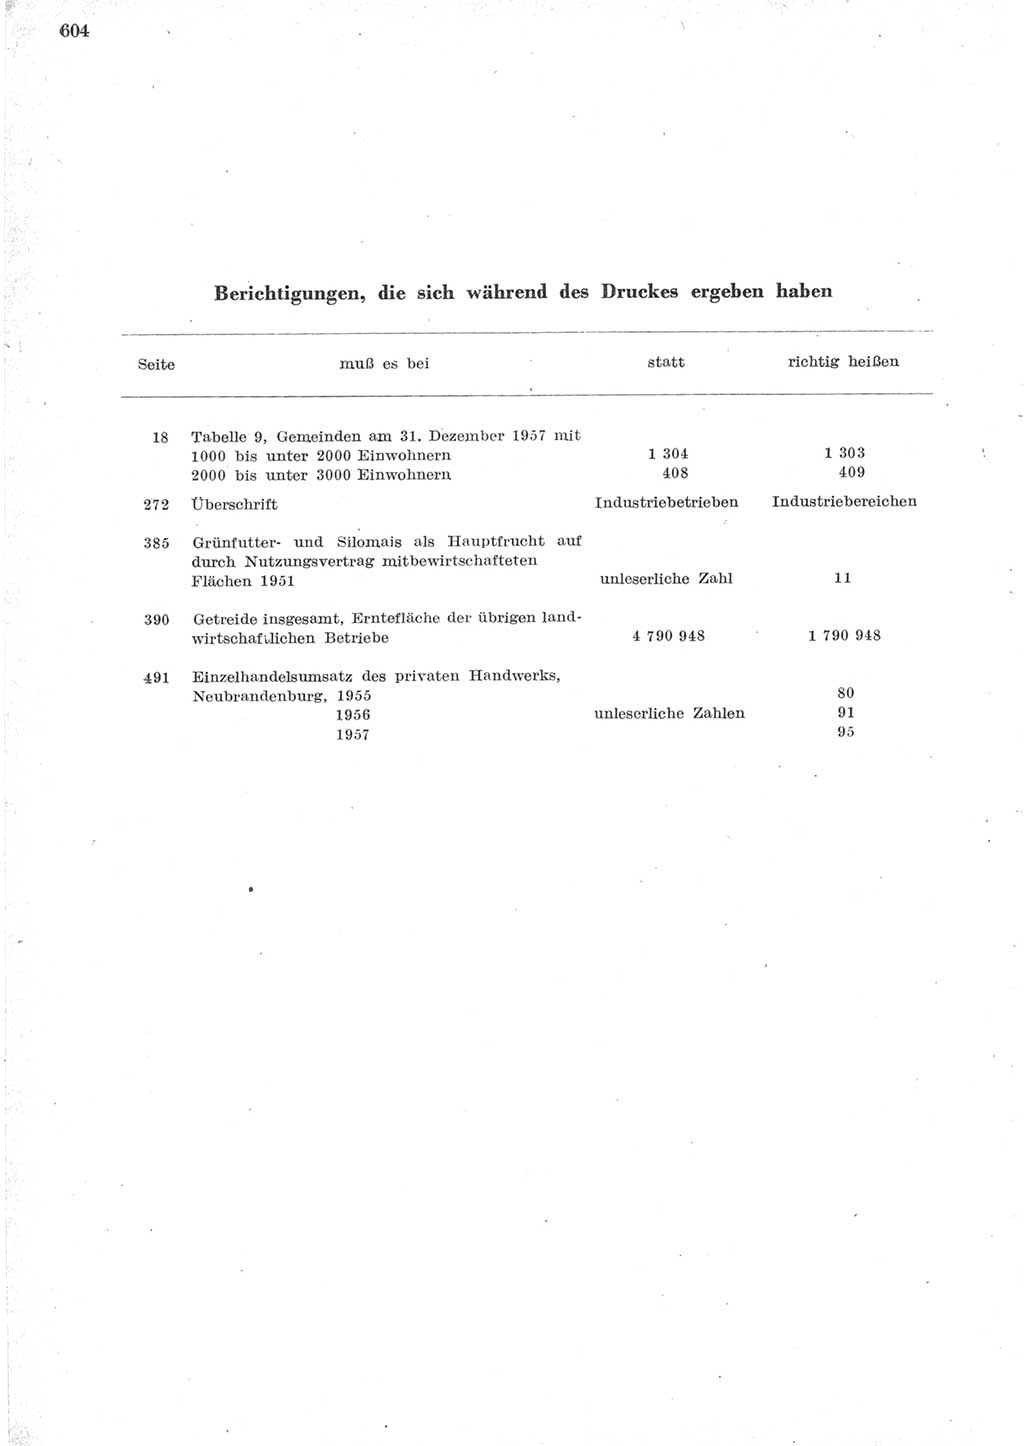 Statistisches Jahrbuch der Deutschen Demokratischen Republik (DDR) 1957, Seite 604 (Stat. Jb. DDR 1957, S. 604)